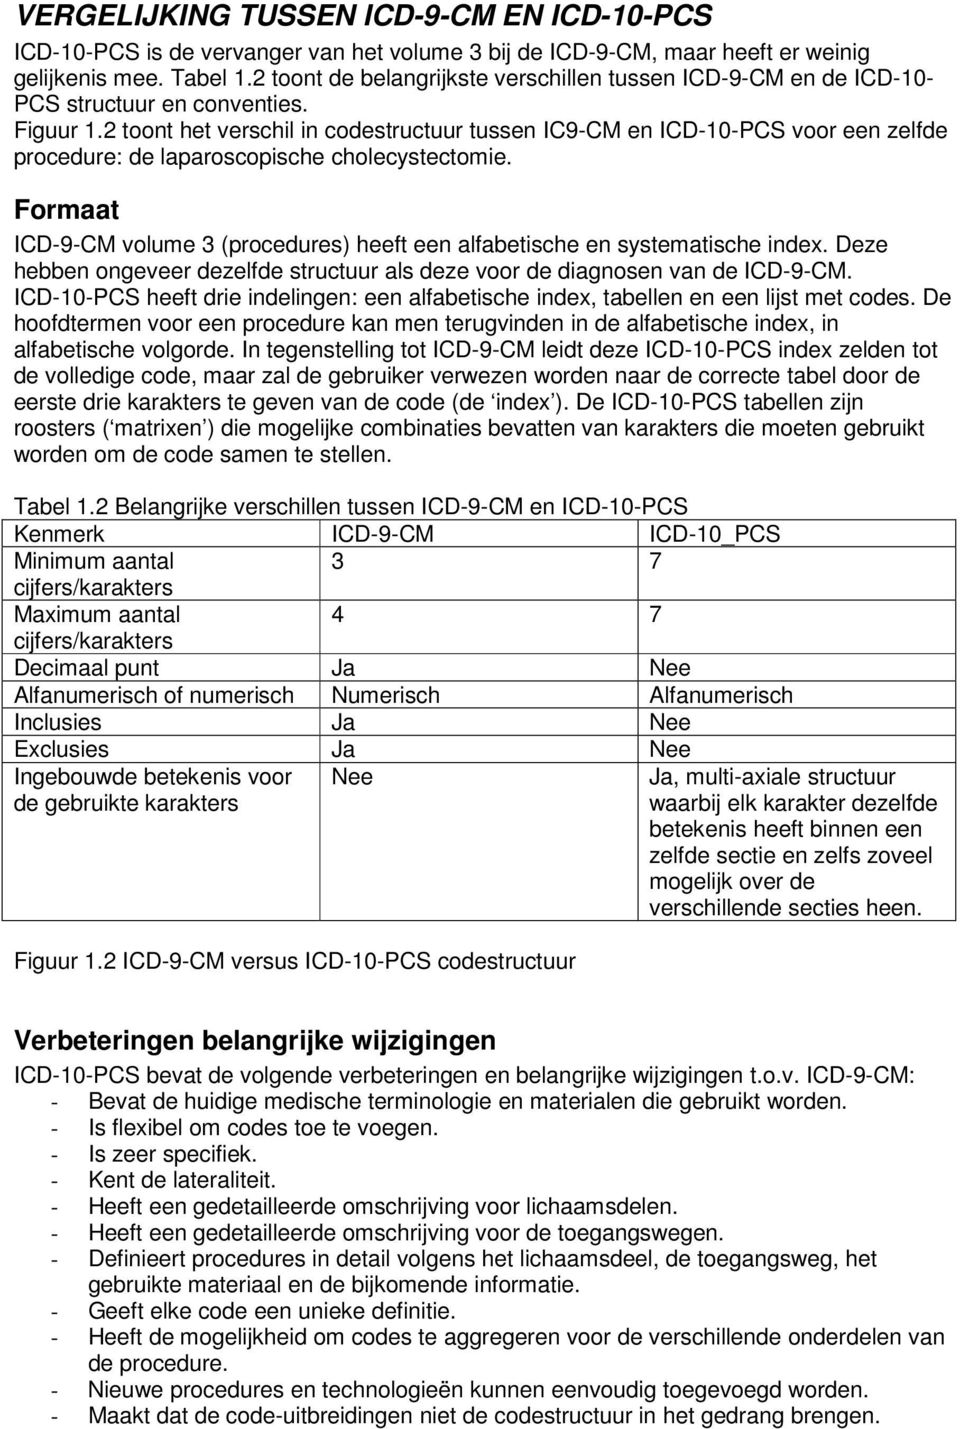 2 toont het verschil in codestructuur tussen IC9-CM en ICD-10-PCS voor een zelfde procedure: de laparoscopische cholecystectomie.